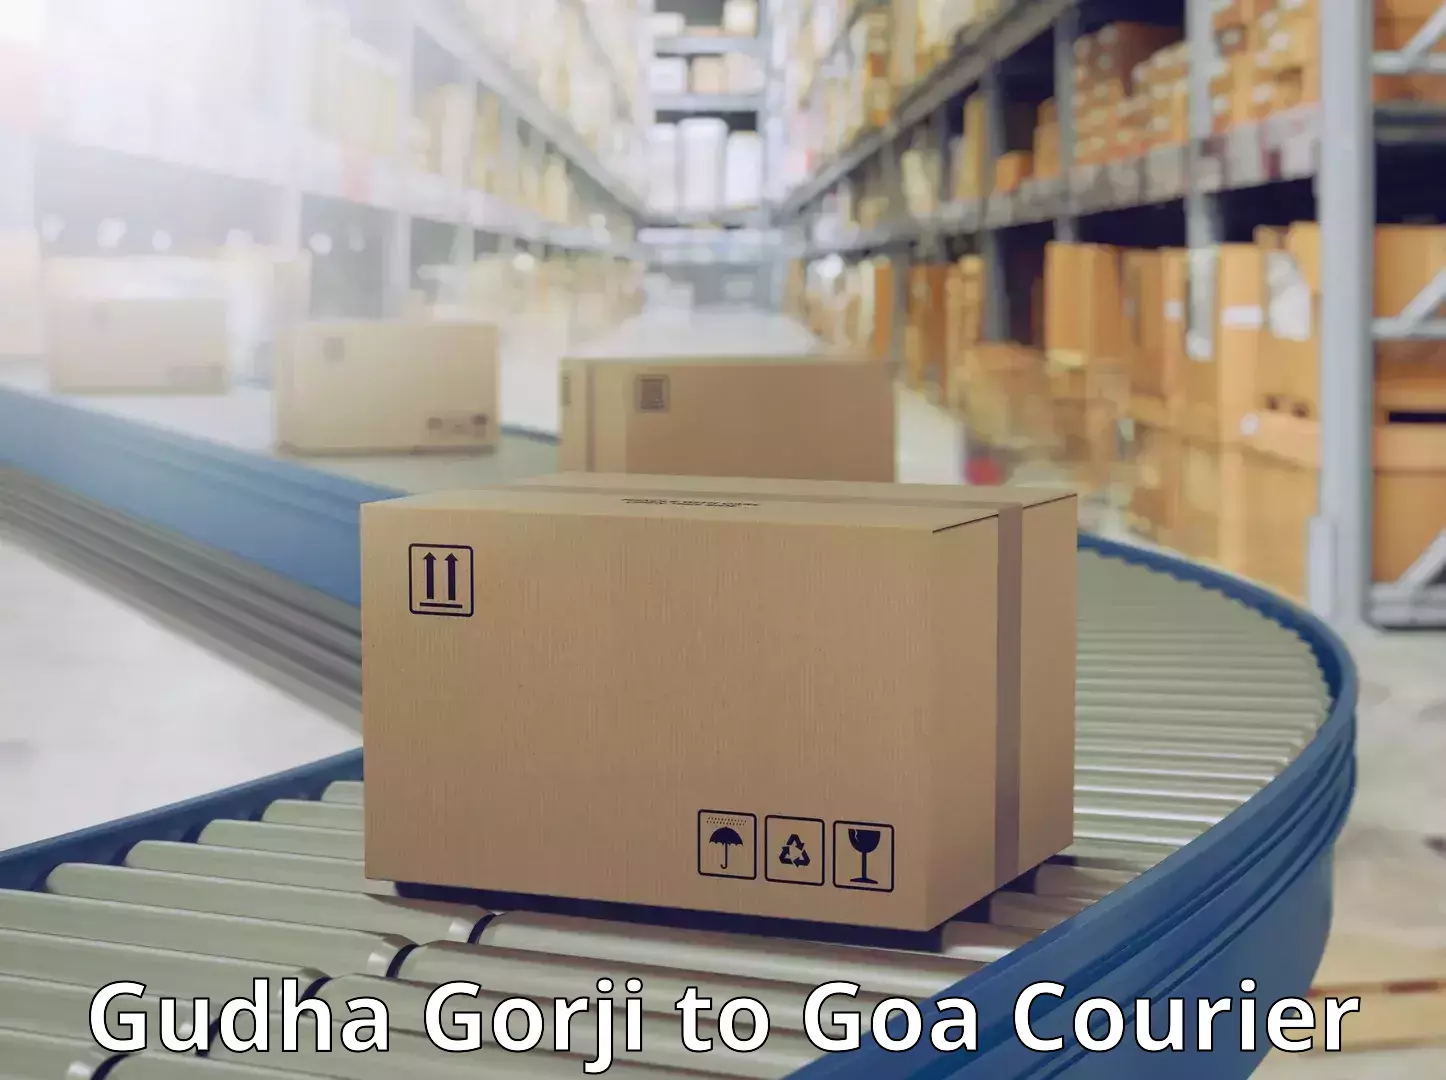 Urban courier service Gudha Gorji to Goa University